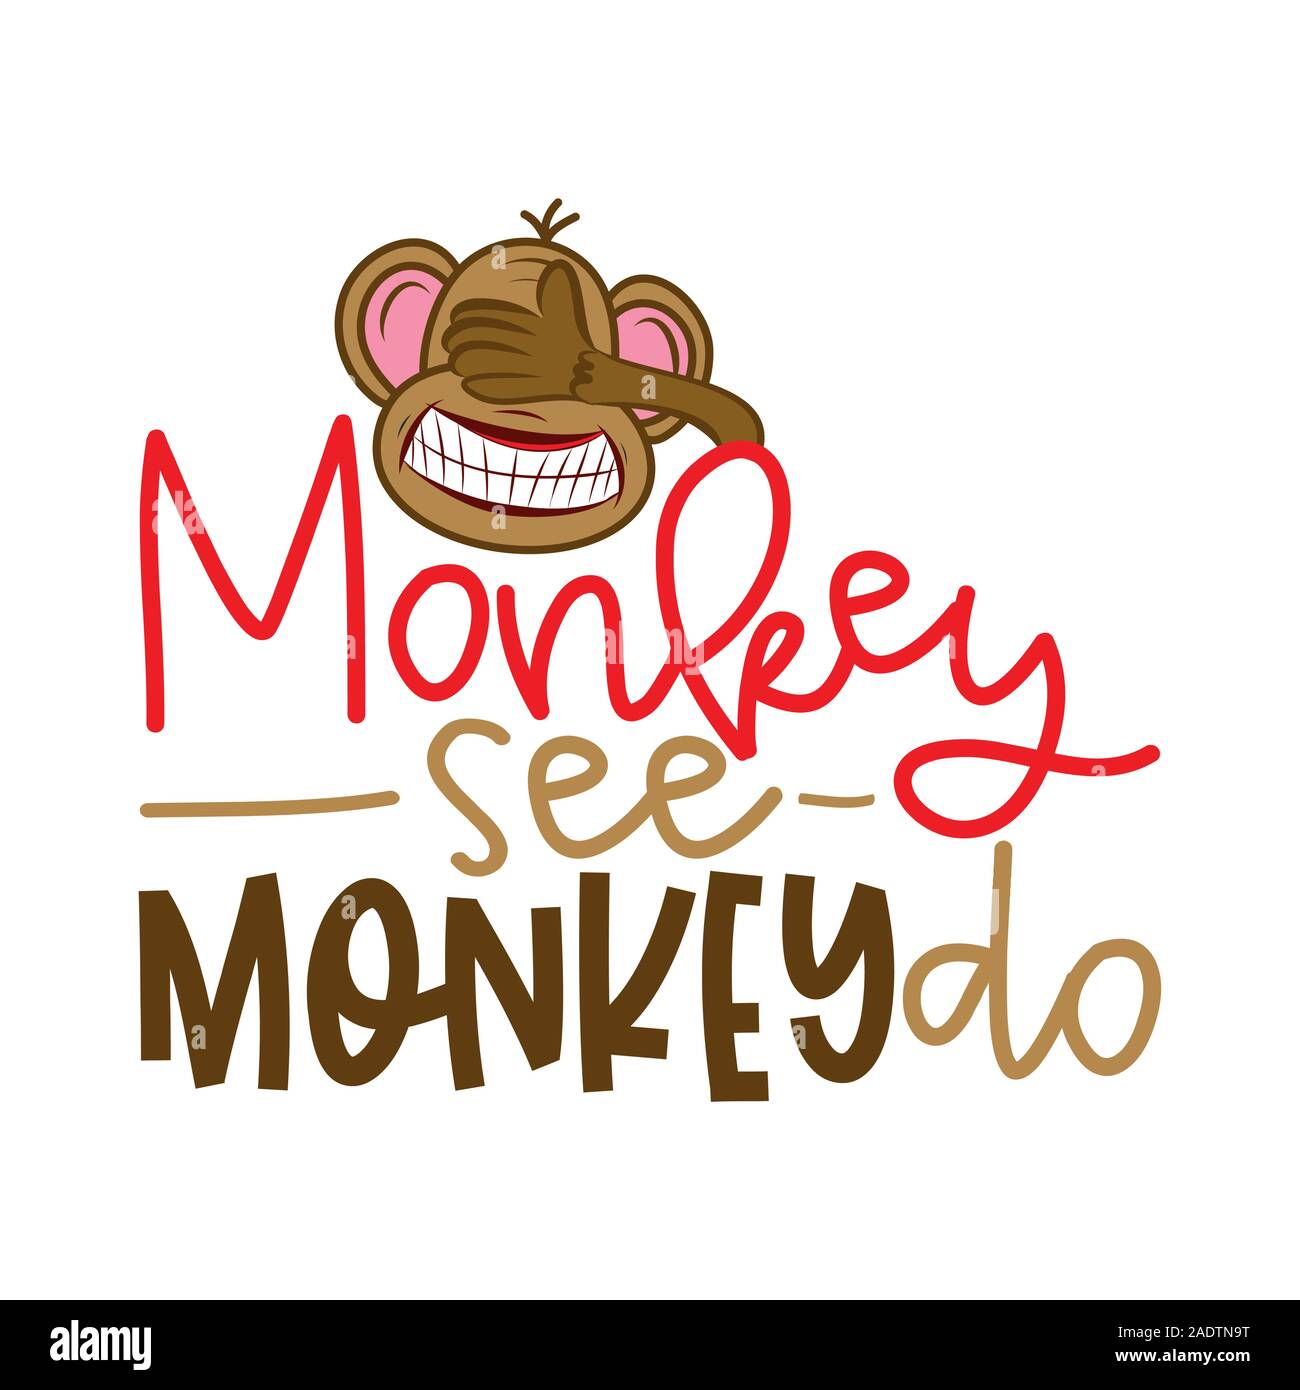 Monkey see monkey do - lettrage drôle avec crazy monkey aveugle. Vector illustration calligraphie faite à la main. Bon pour t shirts, mug, scrap booking, poste Illustration de Vecteur